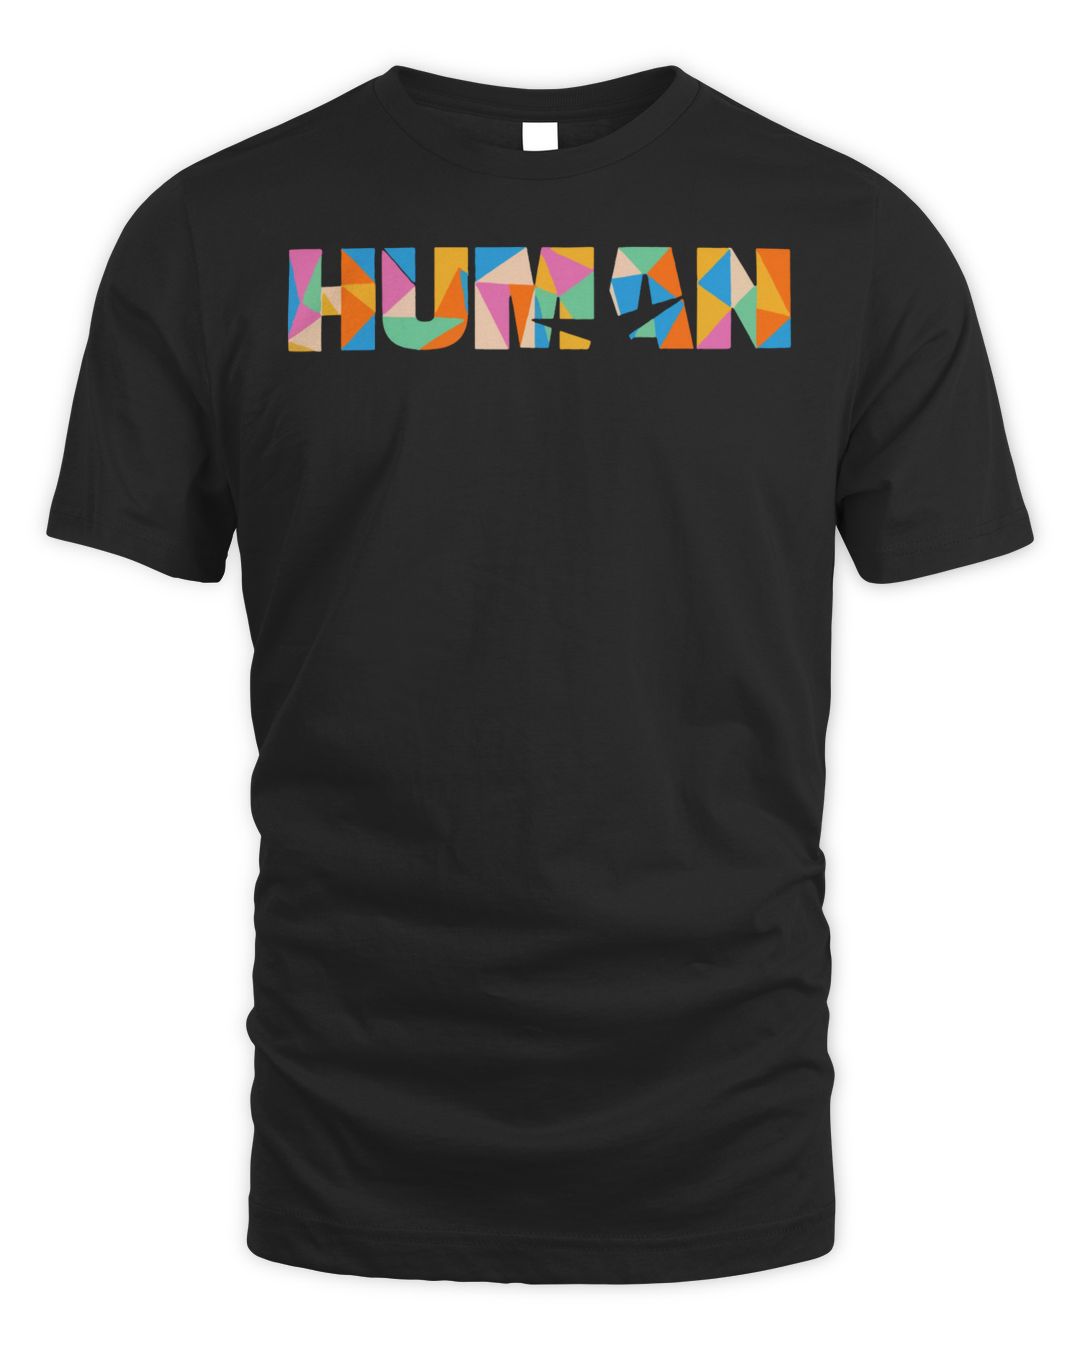 The Trevor Project Merch Human Shirt